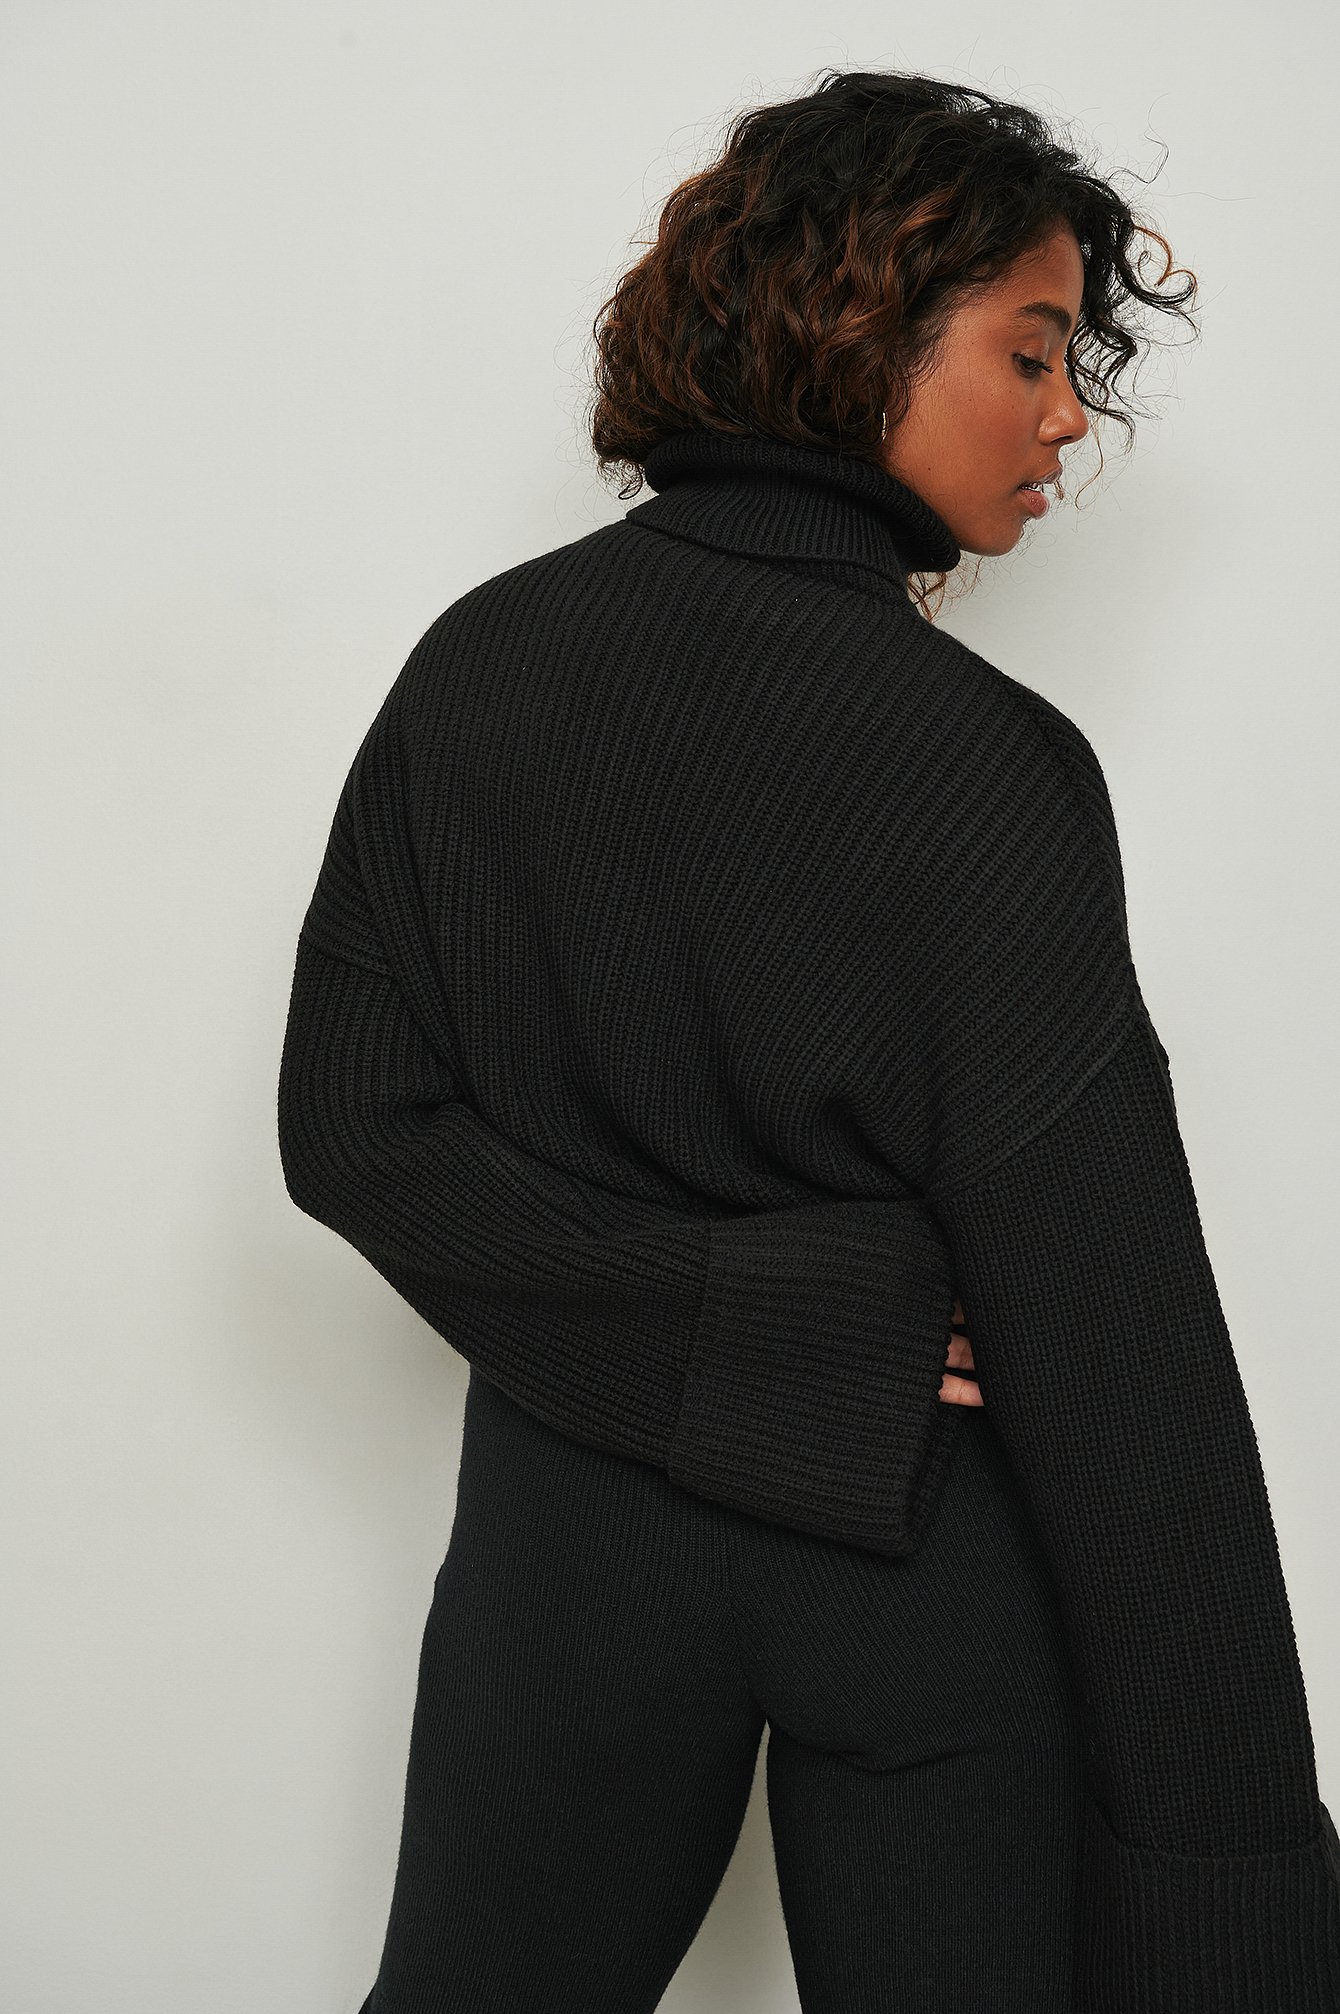 Black Jersey corto de punto de cuello alto con mangas anchas